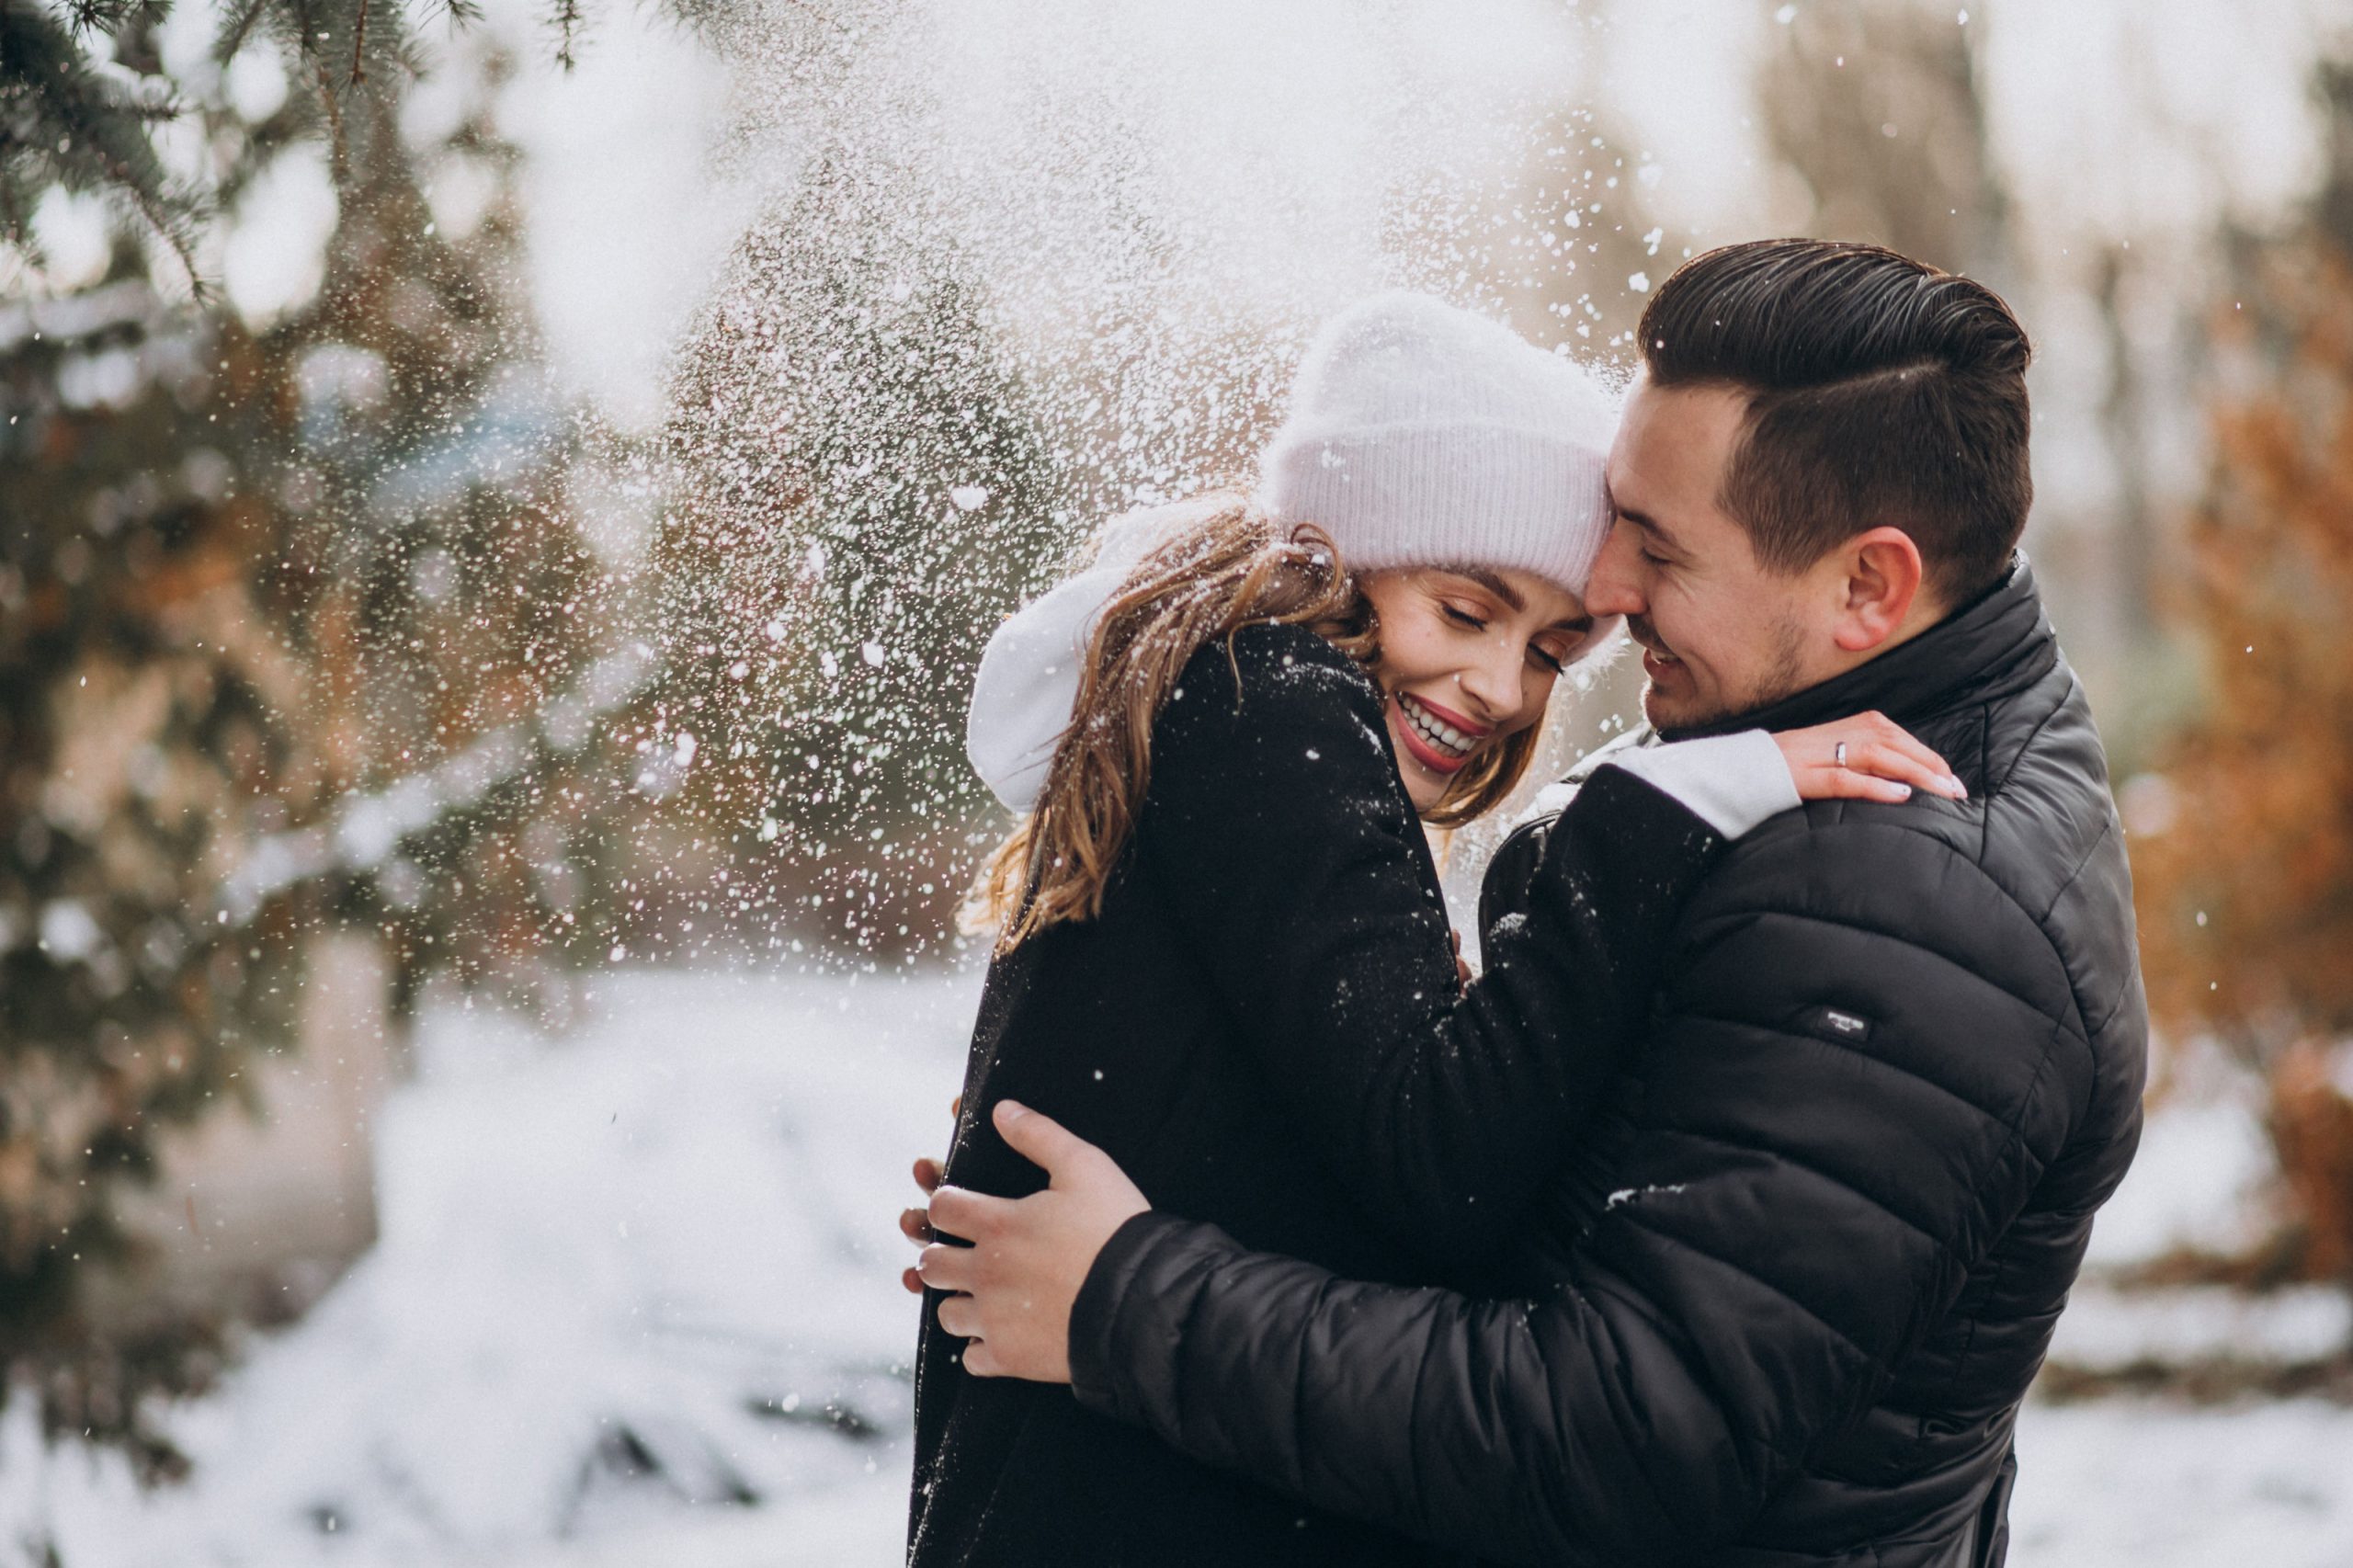 Happy Hug Day: प्यार के इजहार के लिए ही नहीं, बल्कि गले लगाने से मिलते हैं कई फायदे